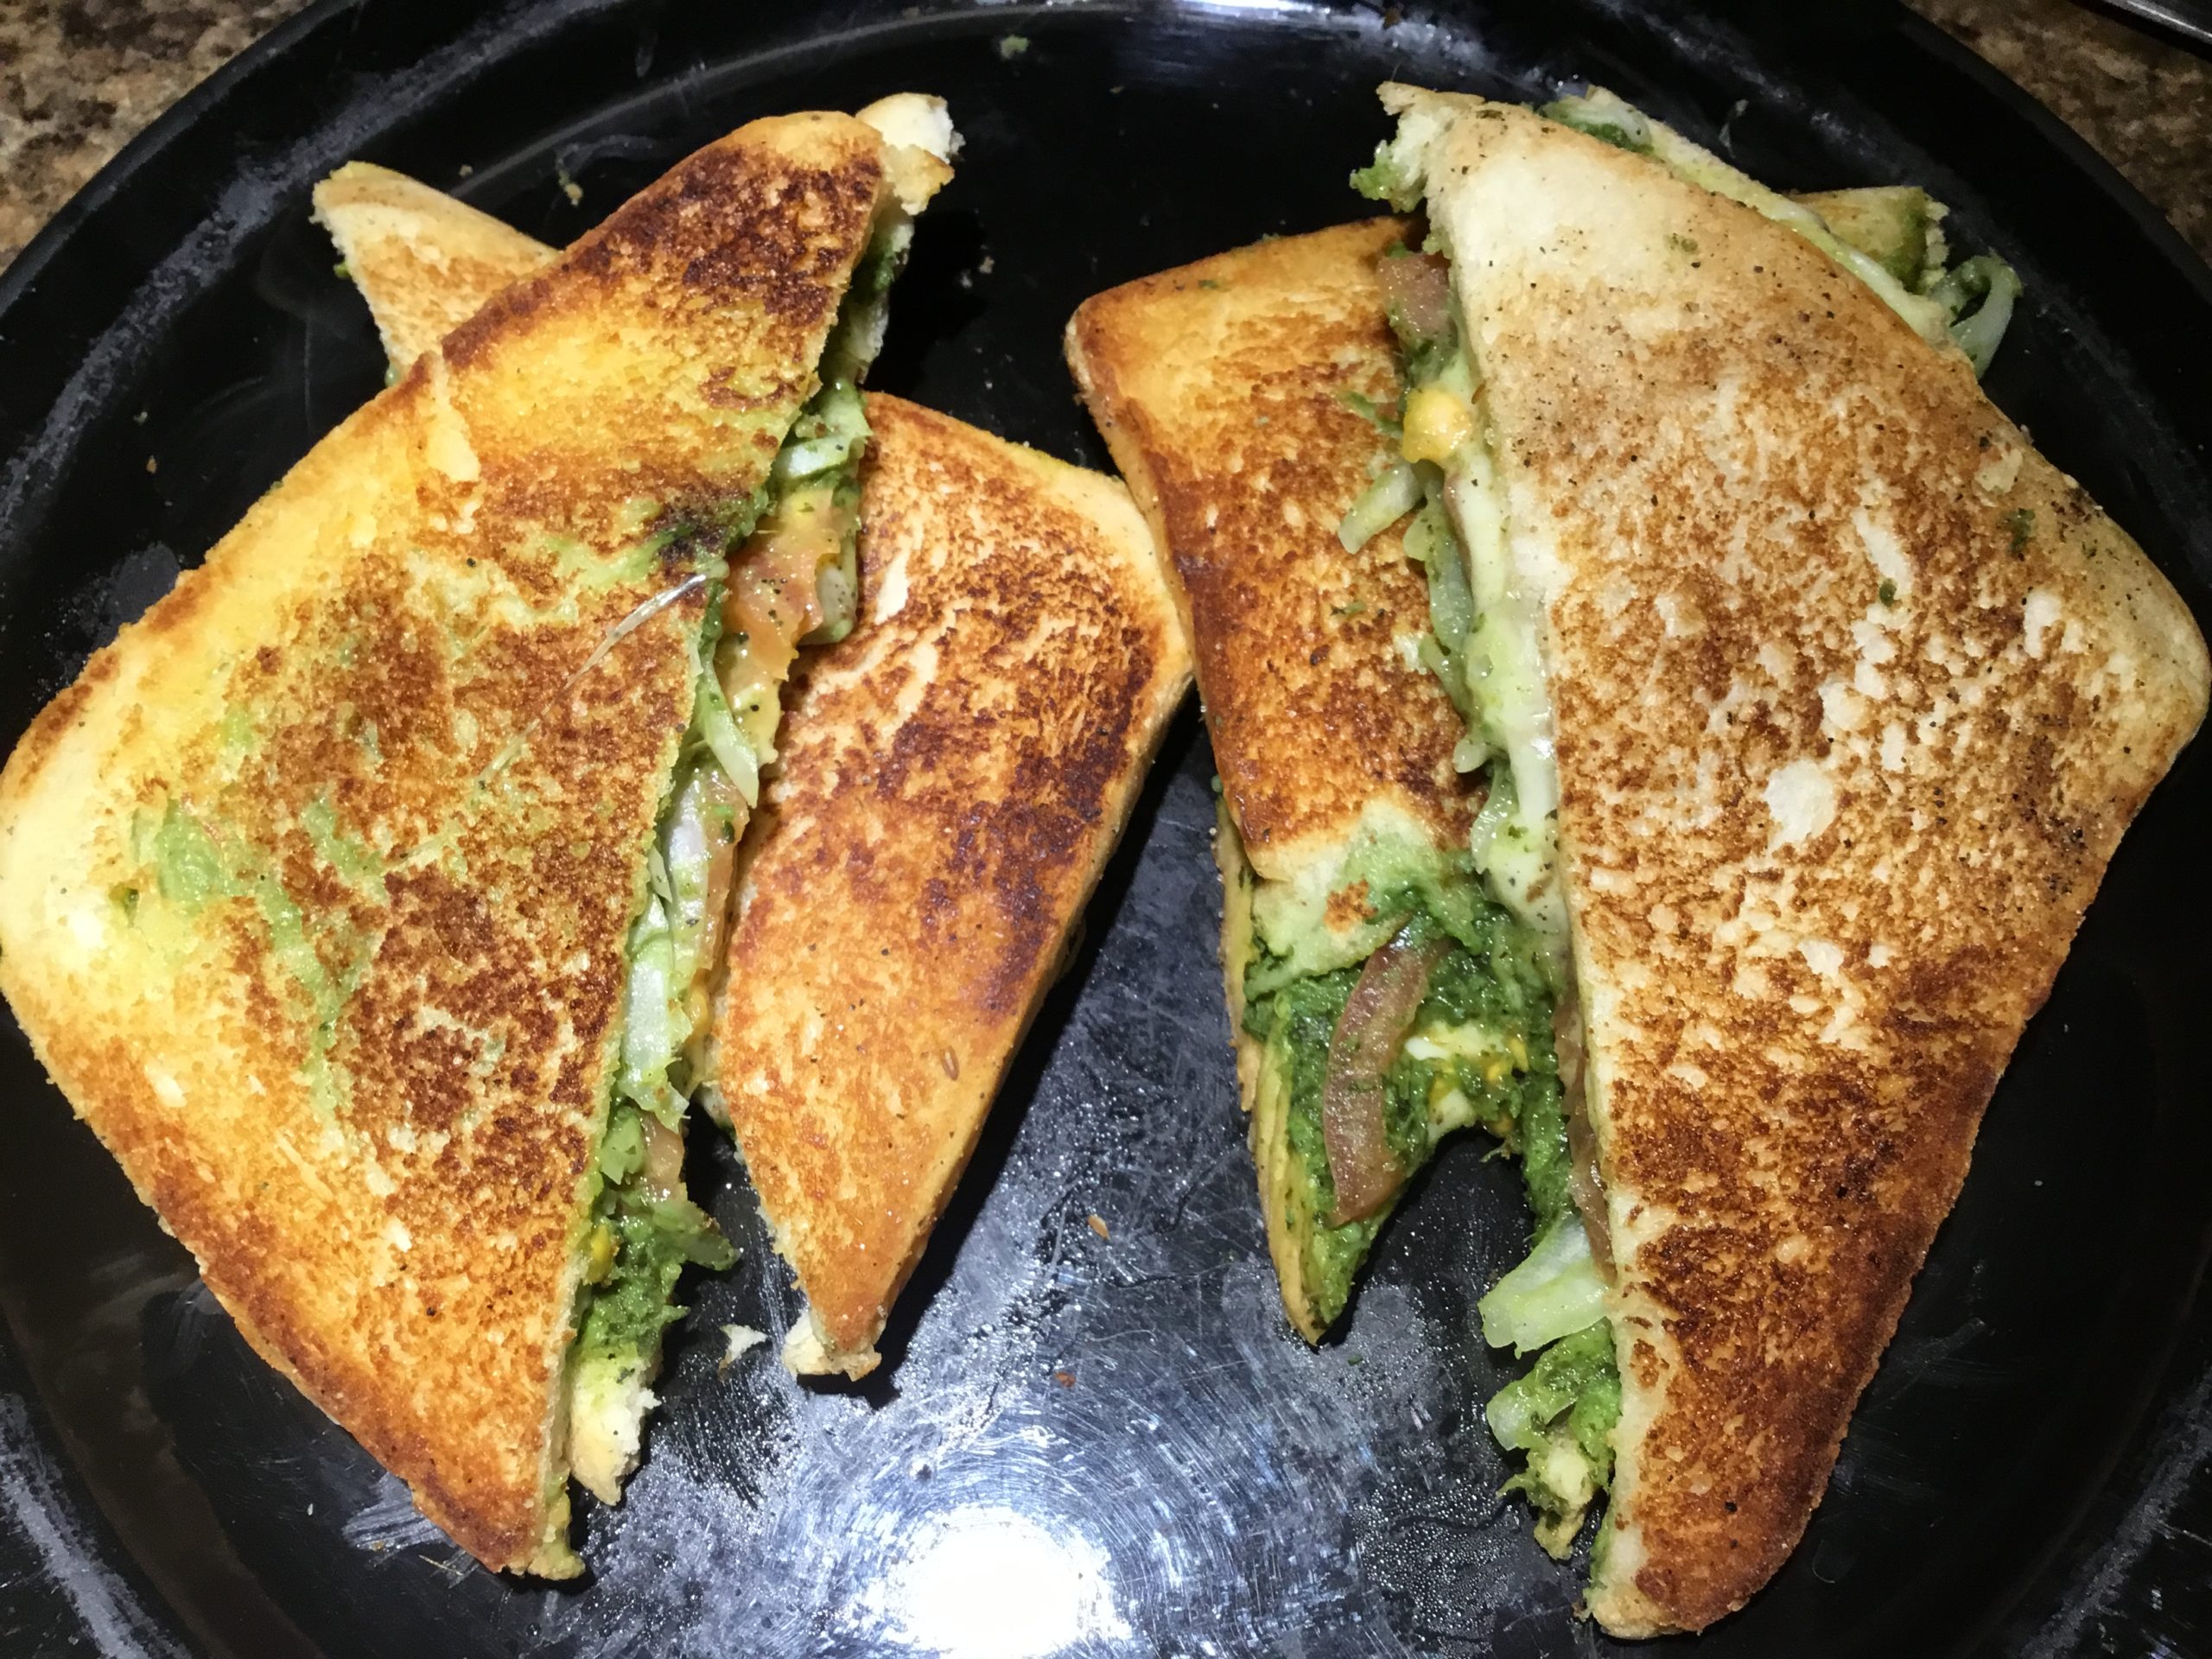 Mumbai Chili Cheese Sandwich